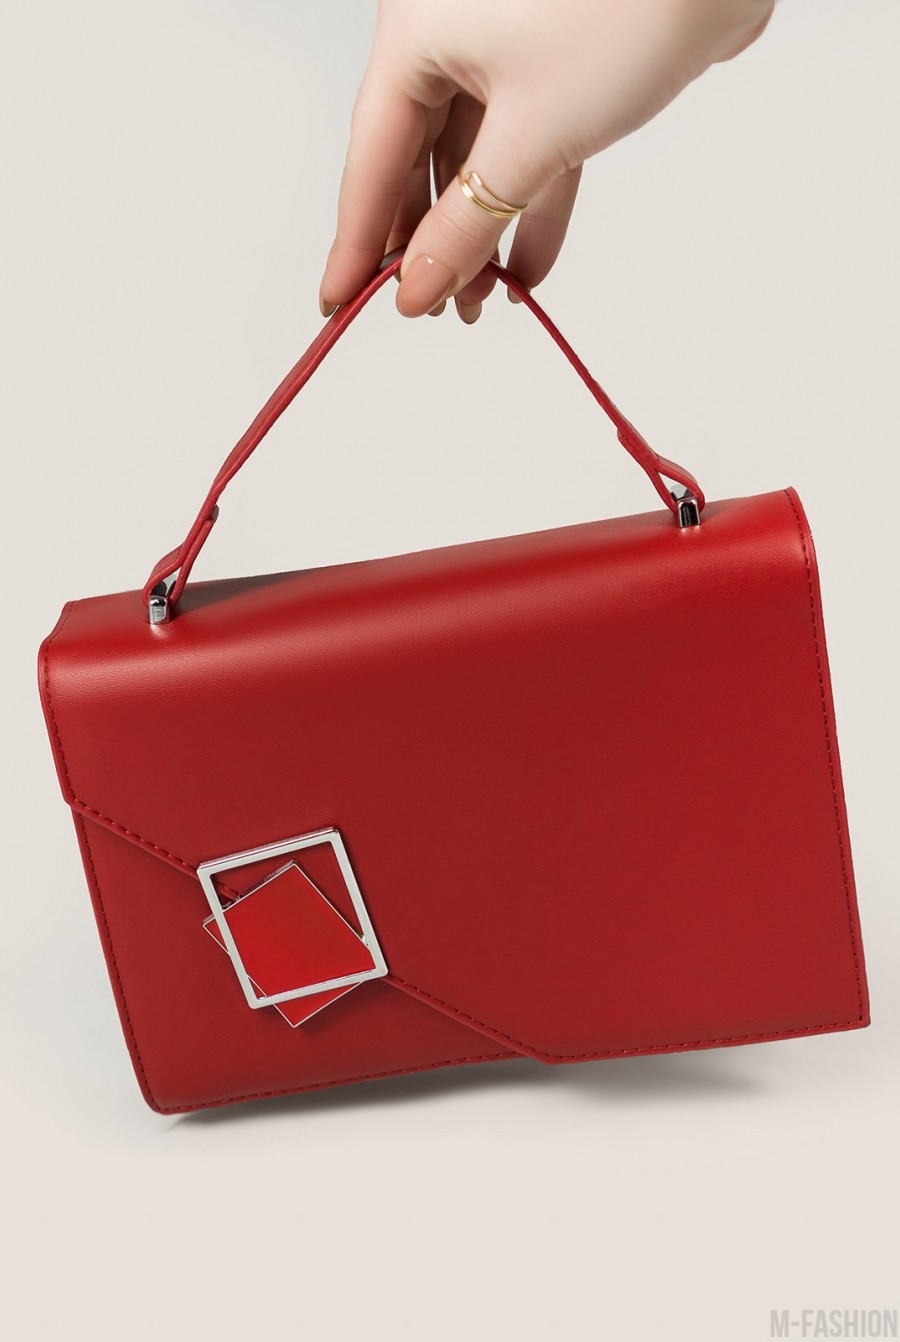 Красная каркасная прямоугольная сумка с металлическим декором - Фото 1